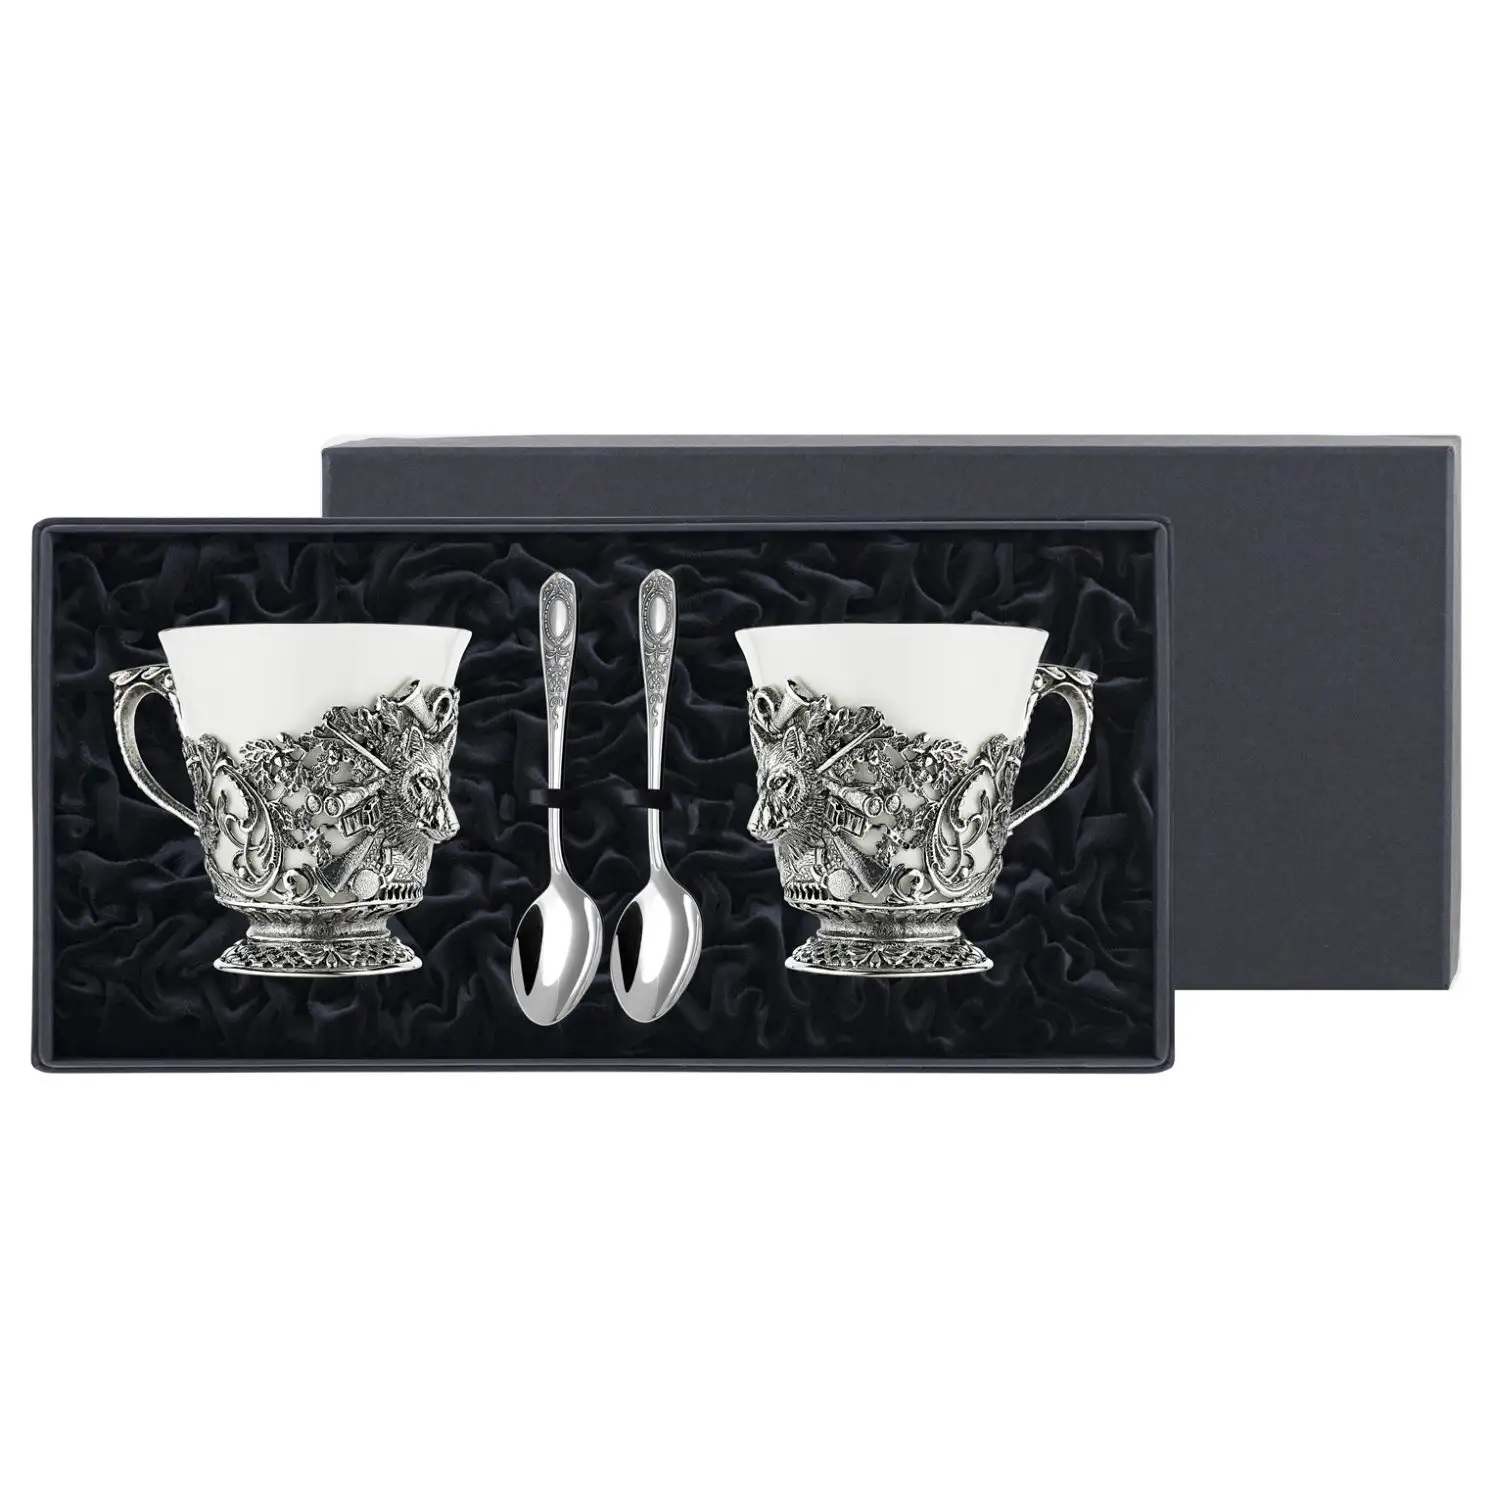 Посеребренный чайный набор Волк с чернениемФото 25925-01.jpg